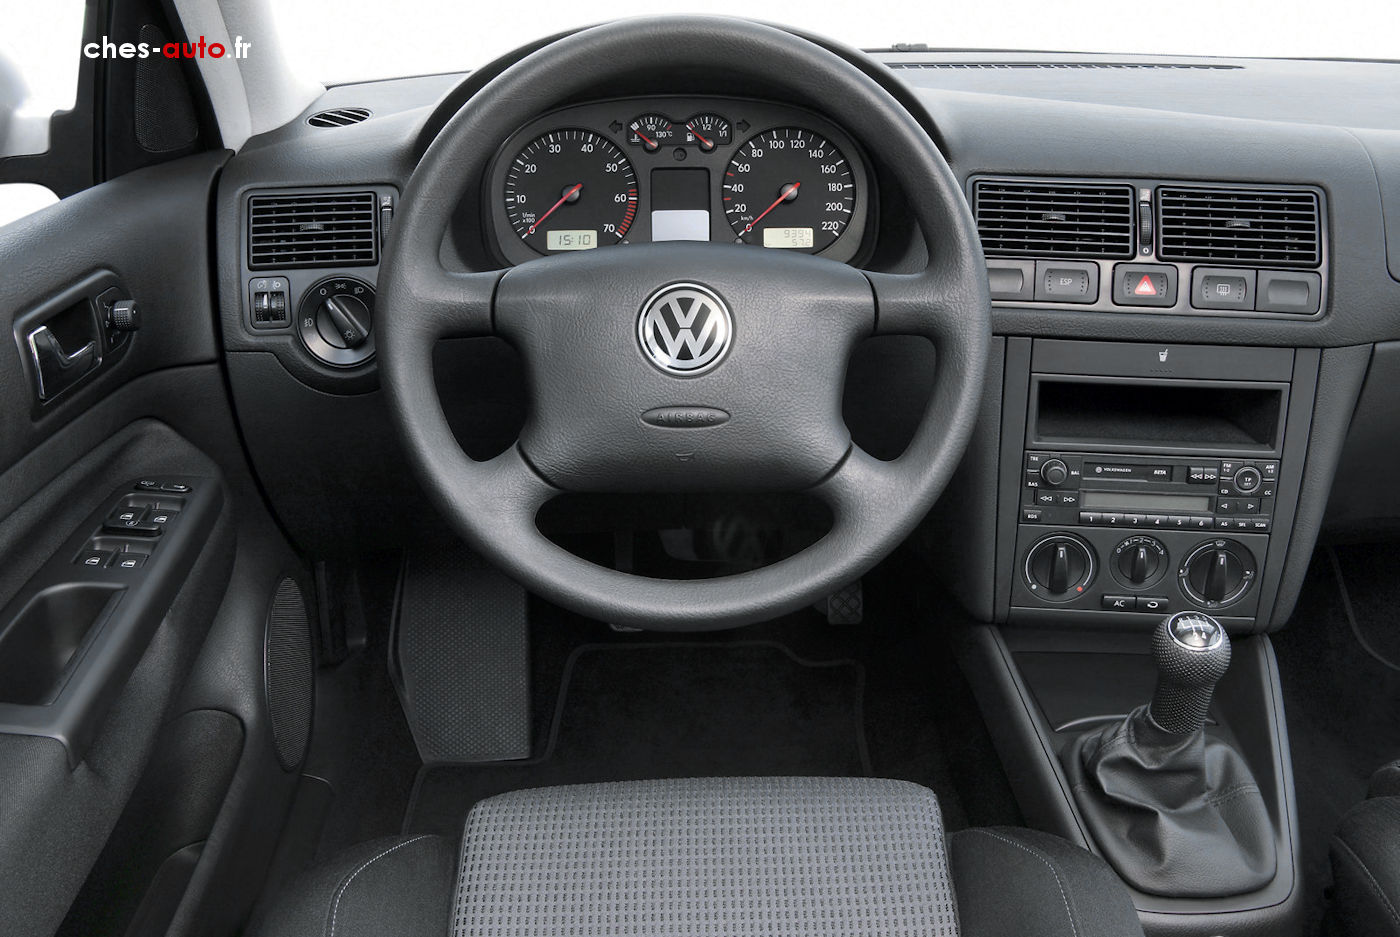 Essai de la Volkswagen Golf IV 1998-2003 : Peut-être la plus ...